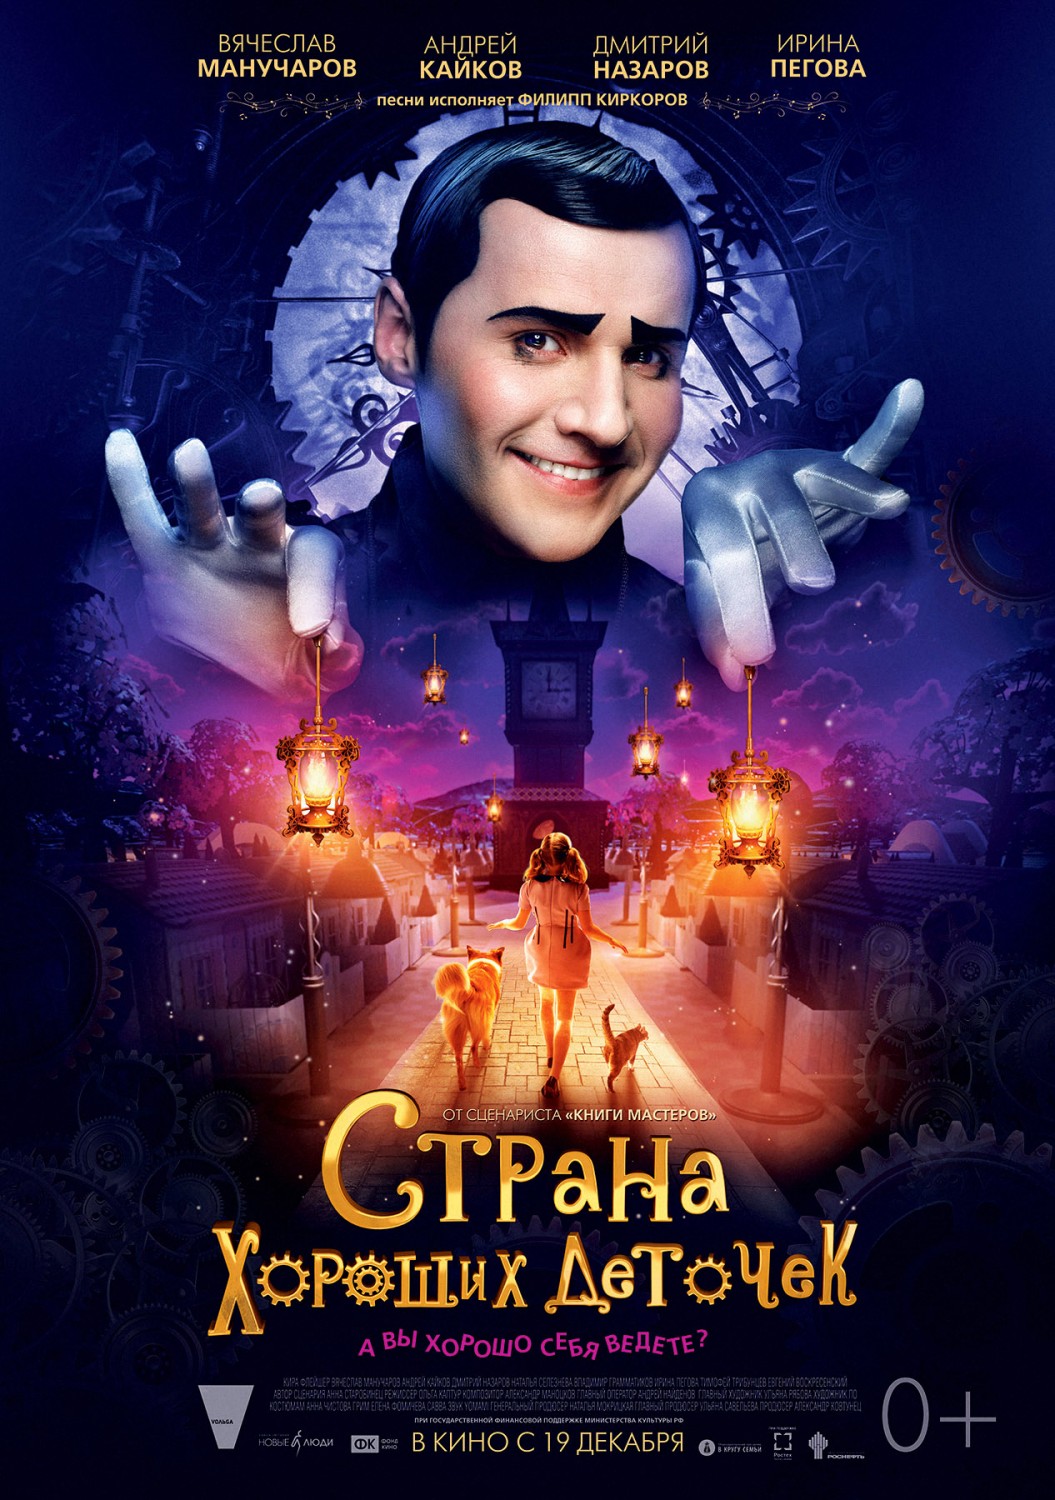 Extra Large Movie Poster Image for Strana khoroshikh detochek 